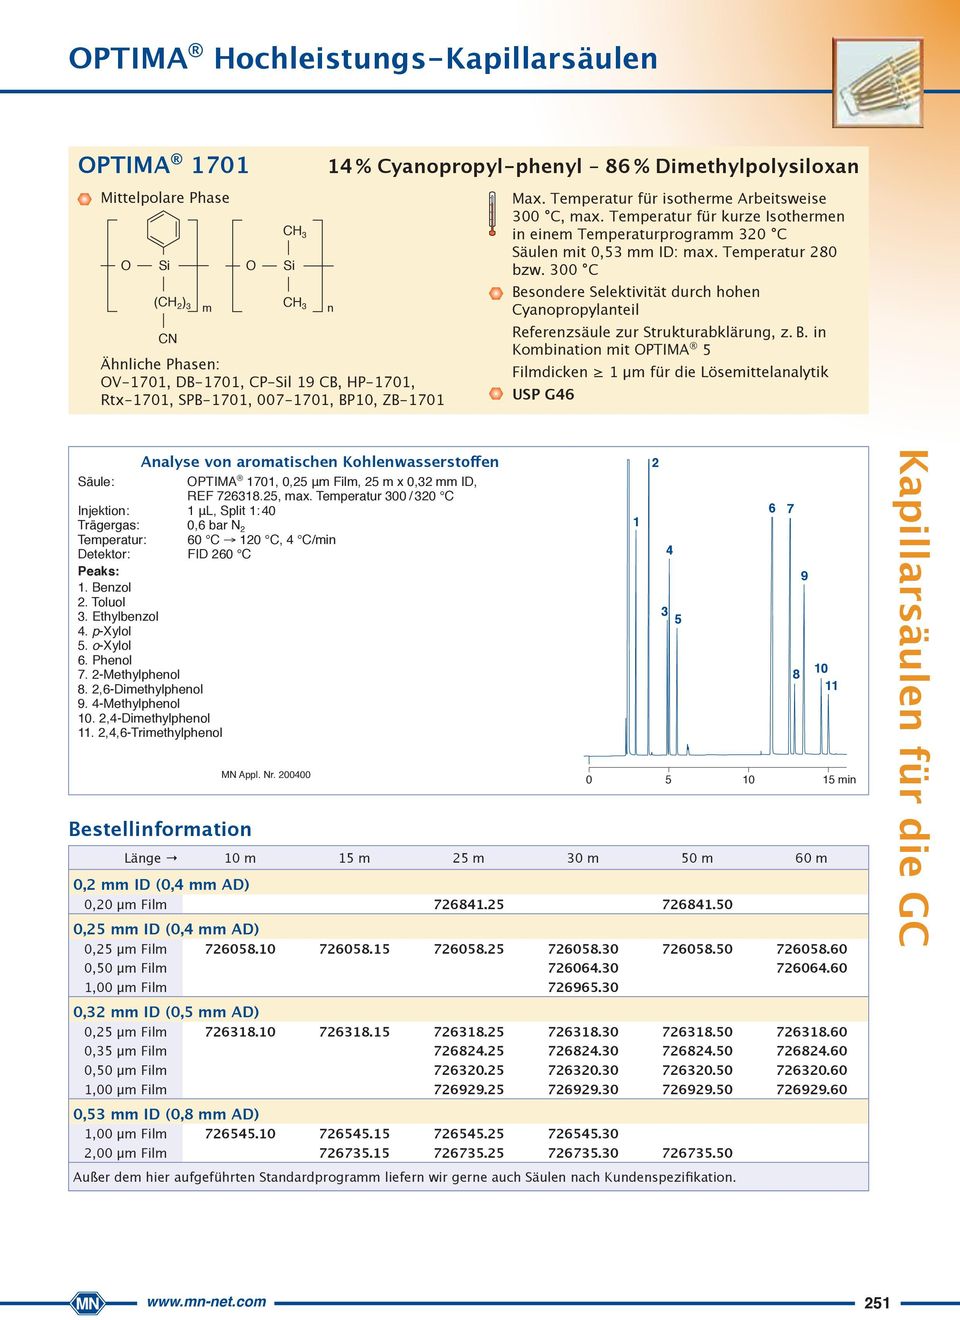 00 C Besondere Selektivität durch hohen Cyanopropyl anteil Referenzsäule zur Strukturabklärung, z. B. in Kombination mit PTIMA Filmdicken μm für die Lösemittelanalytik USP G46 Analyse von aromatischen Kohlenwasserstoffen Säule: PTIMA 70, 0, μm Film, m x 0, mm ID, REF 768.